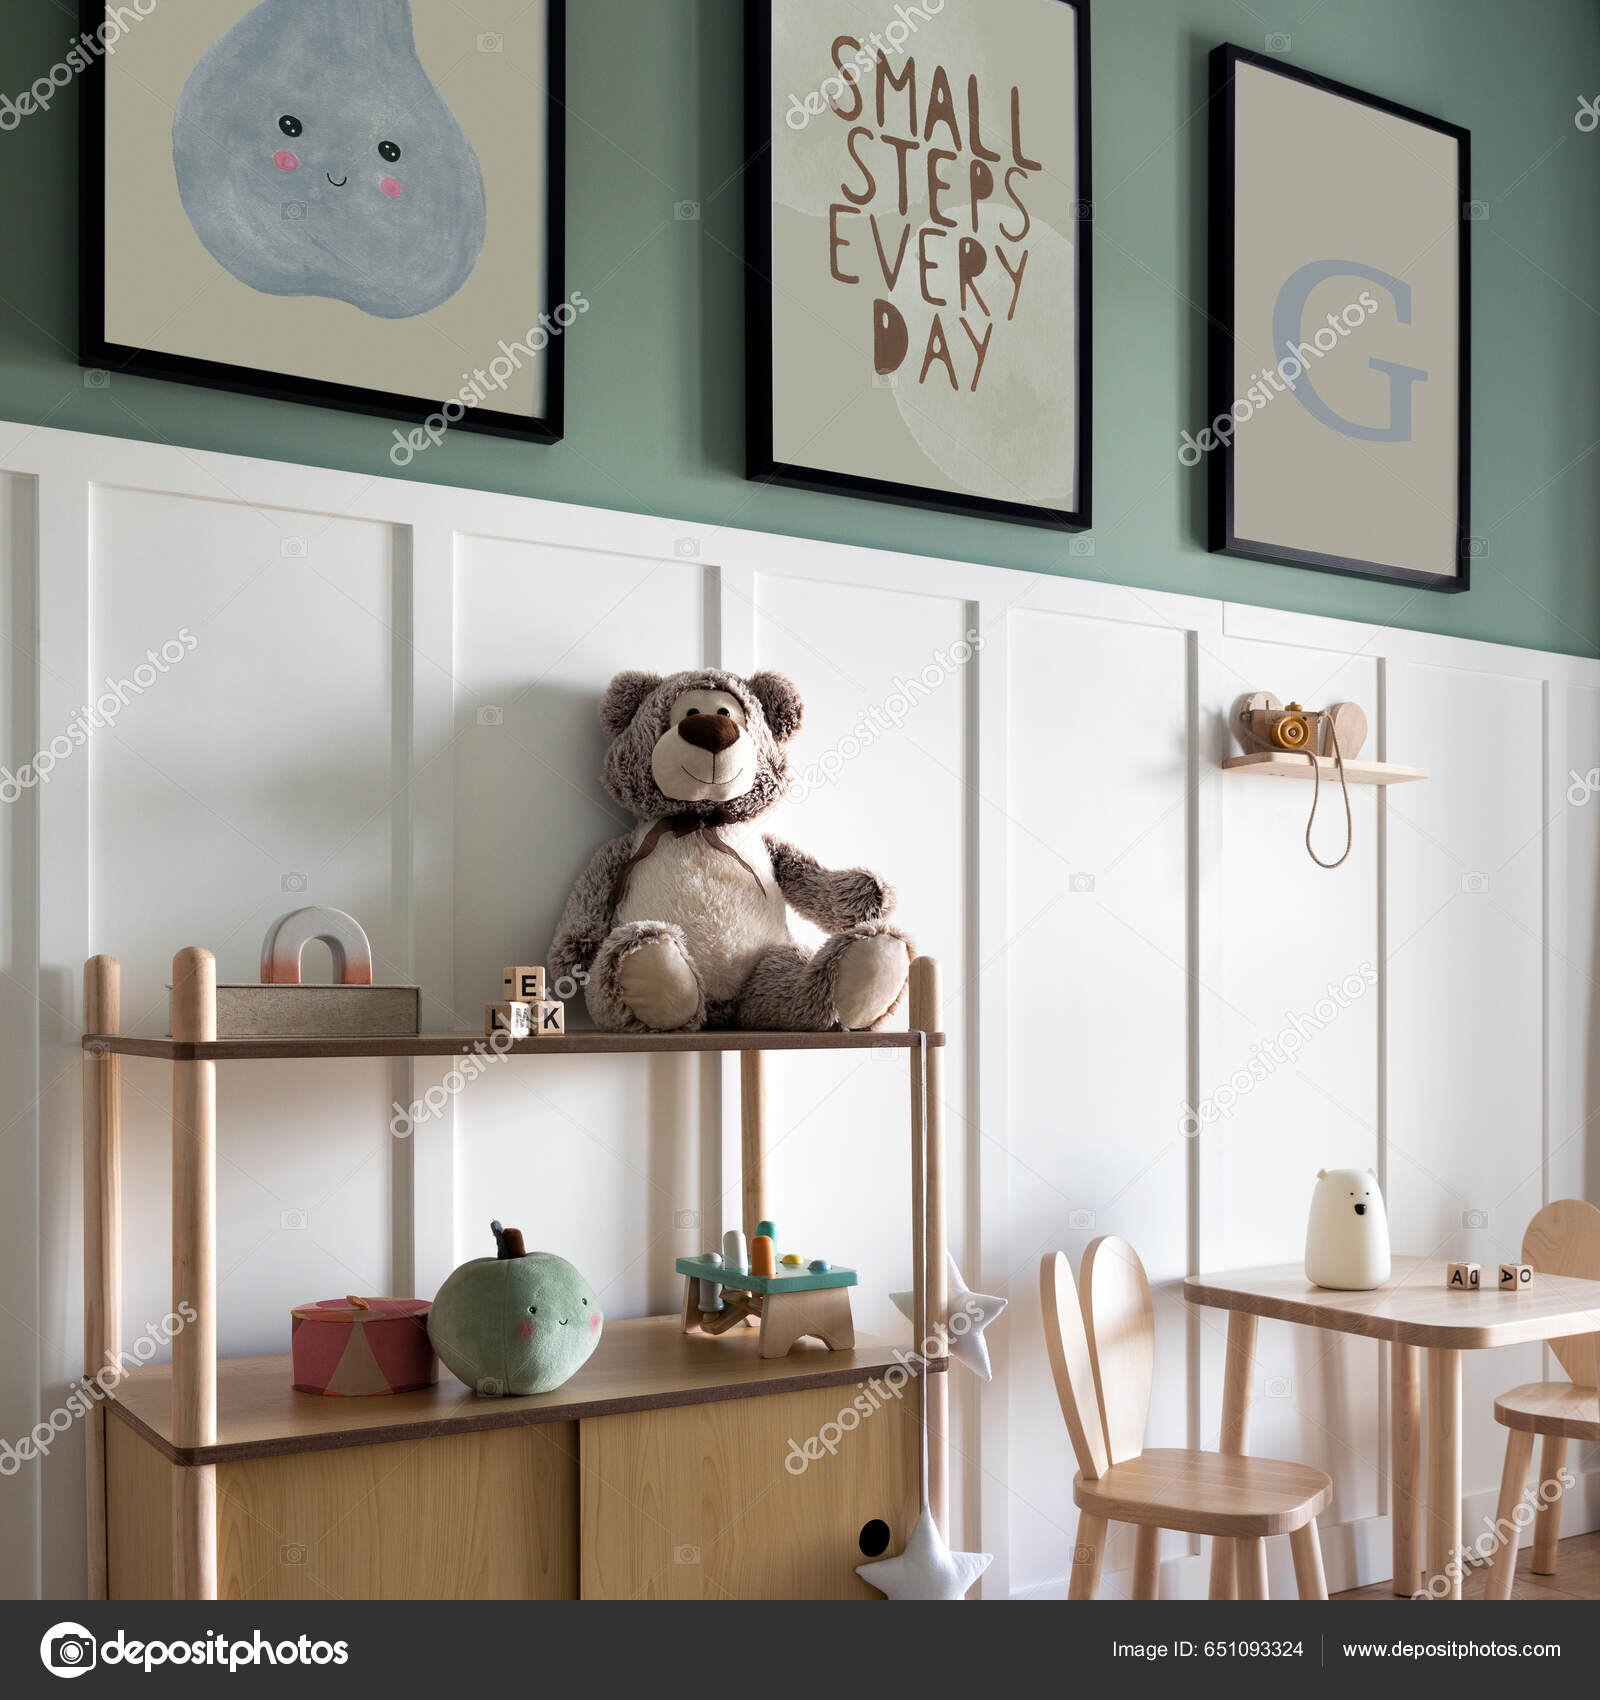 Cesta natural de pared gris osito de peluche en silla para niños y juguetes  de diseño